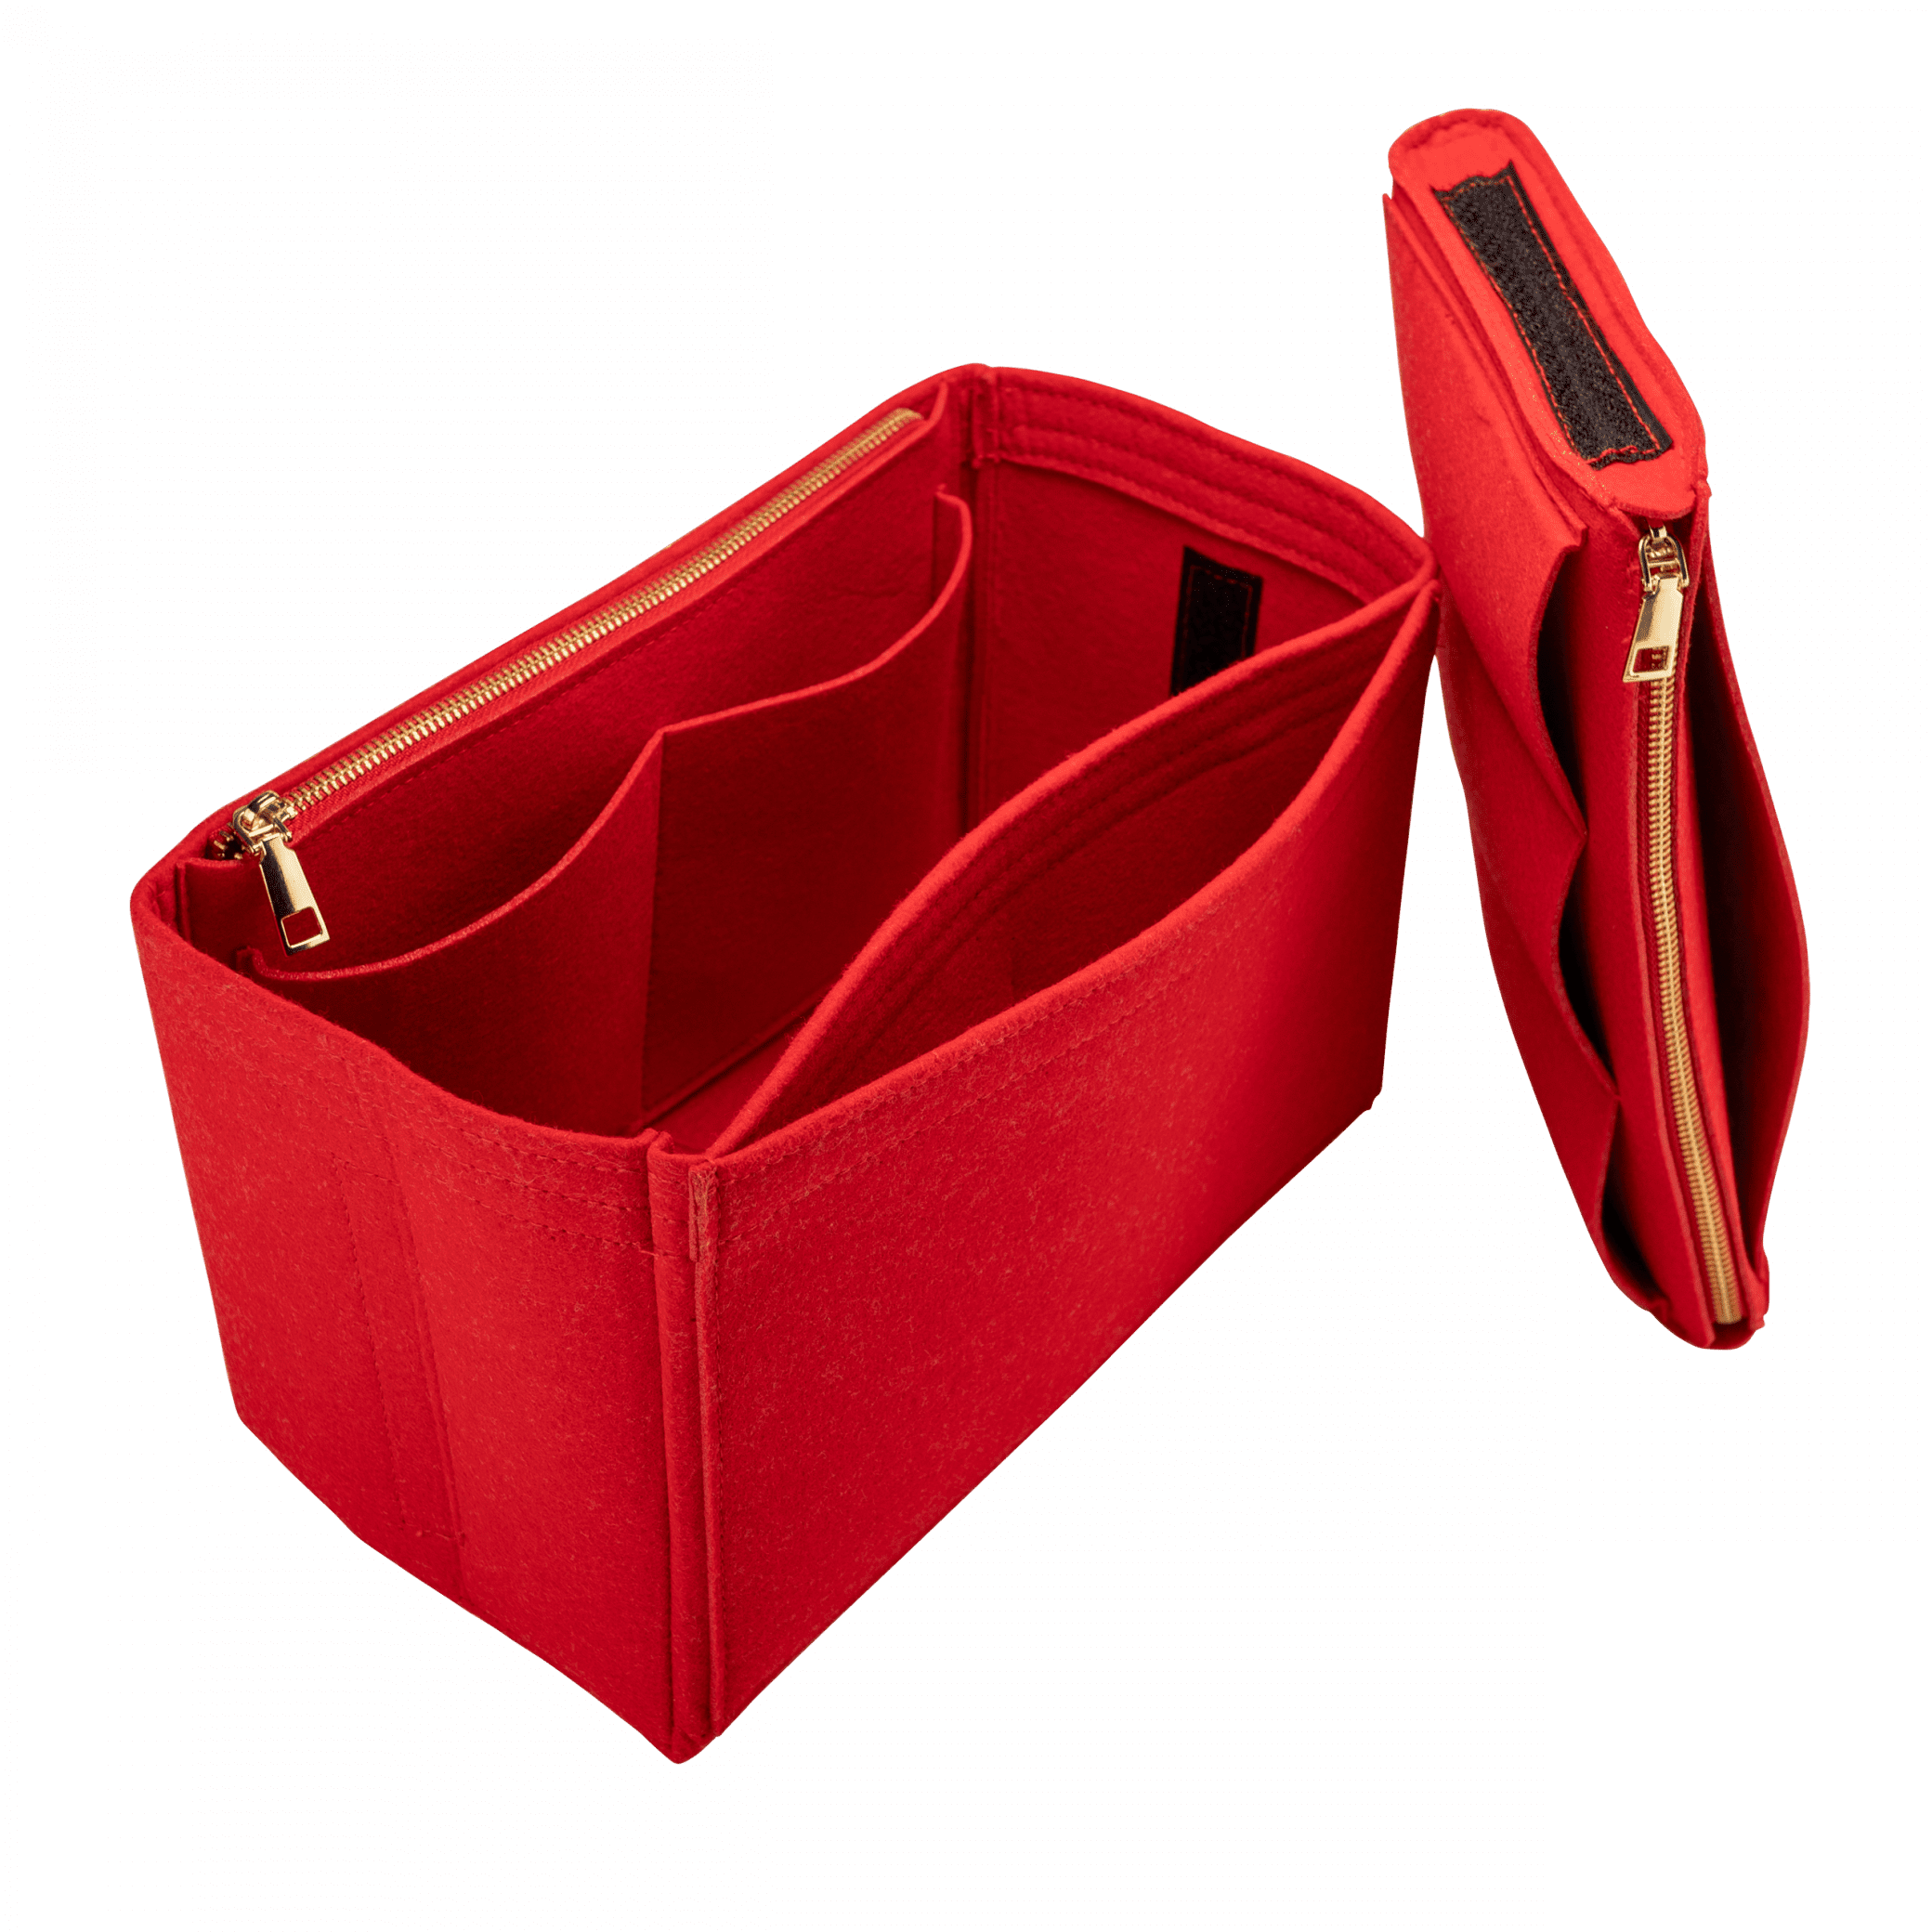 Taschenorganizer Filz Organizer für Rucksack Handtasche 28,4x21,8x12,9cm Beige 